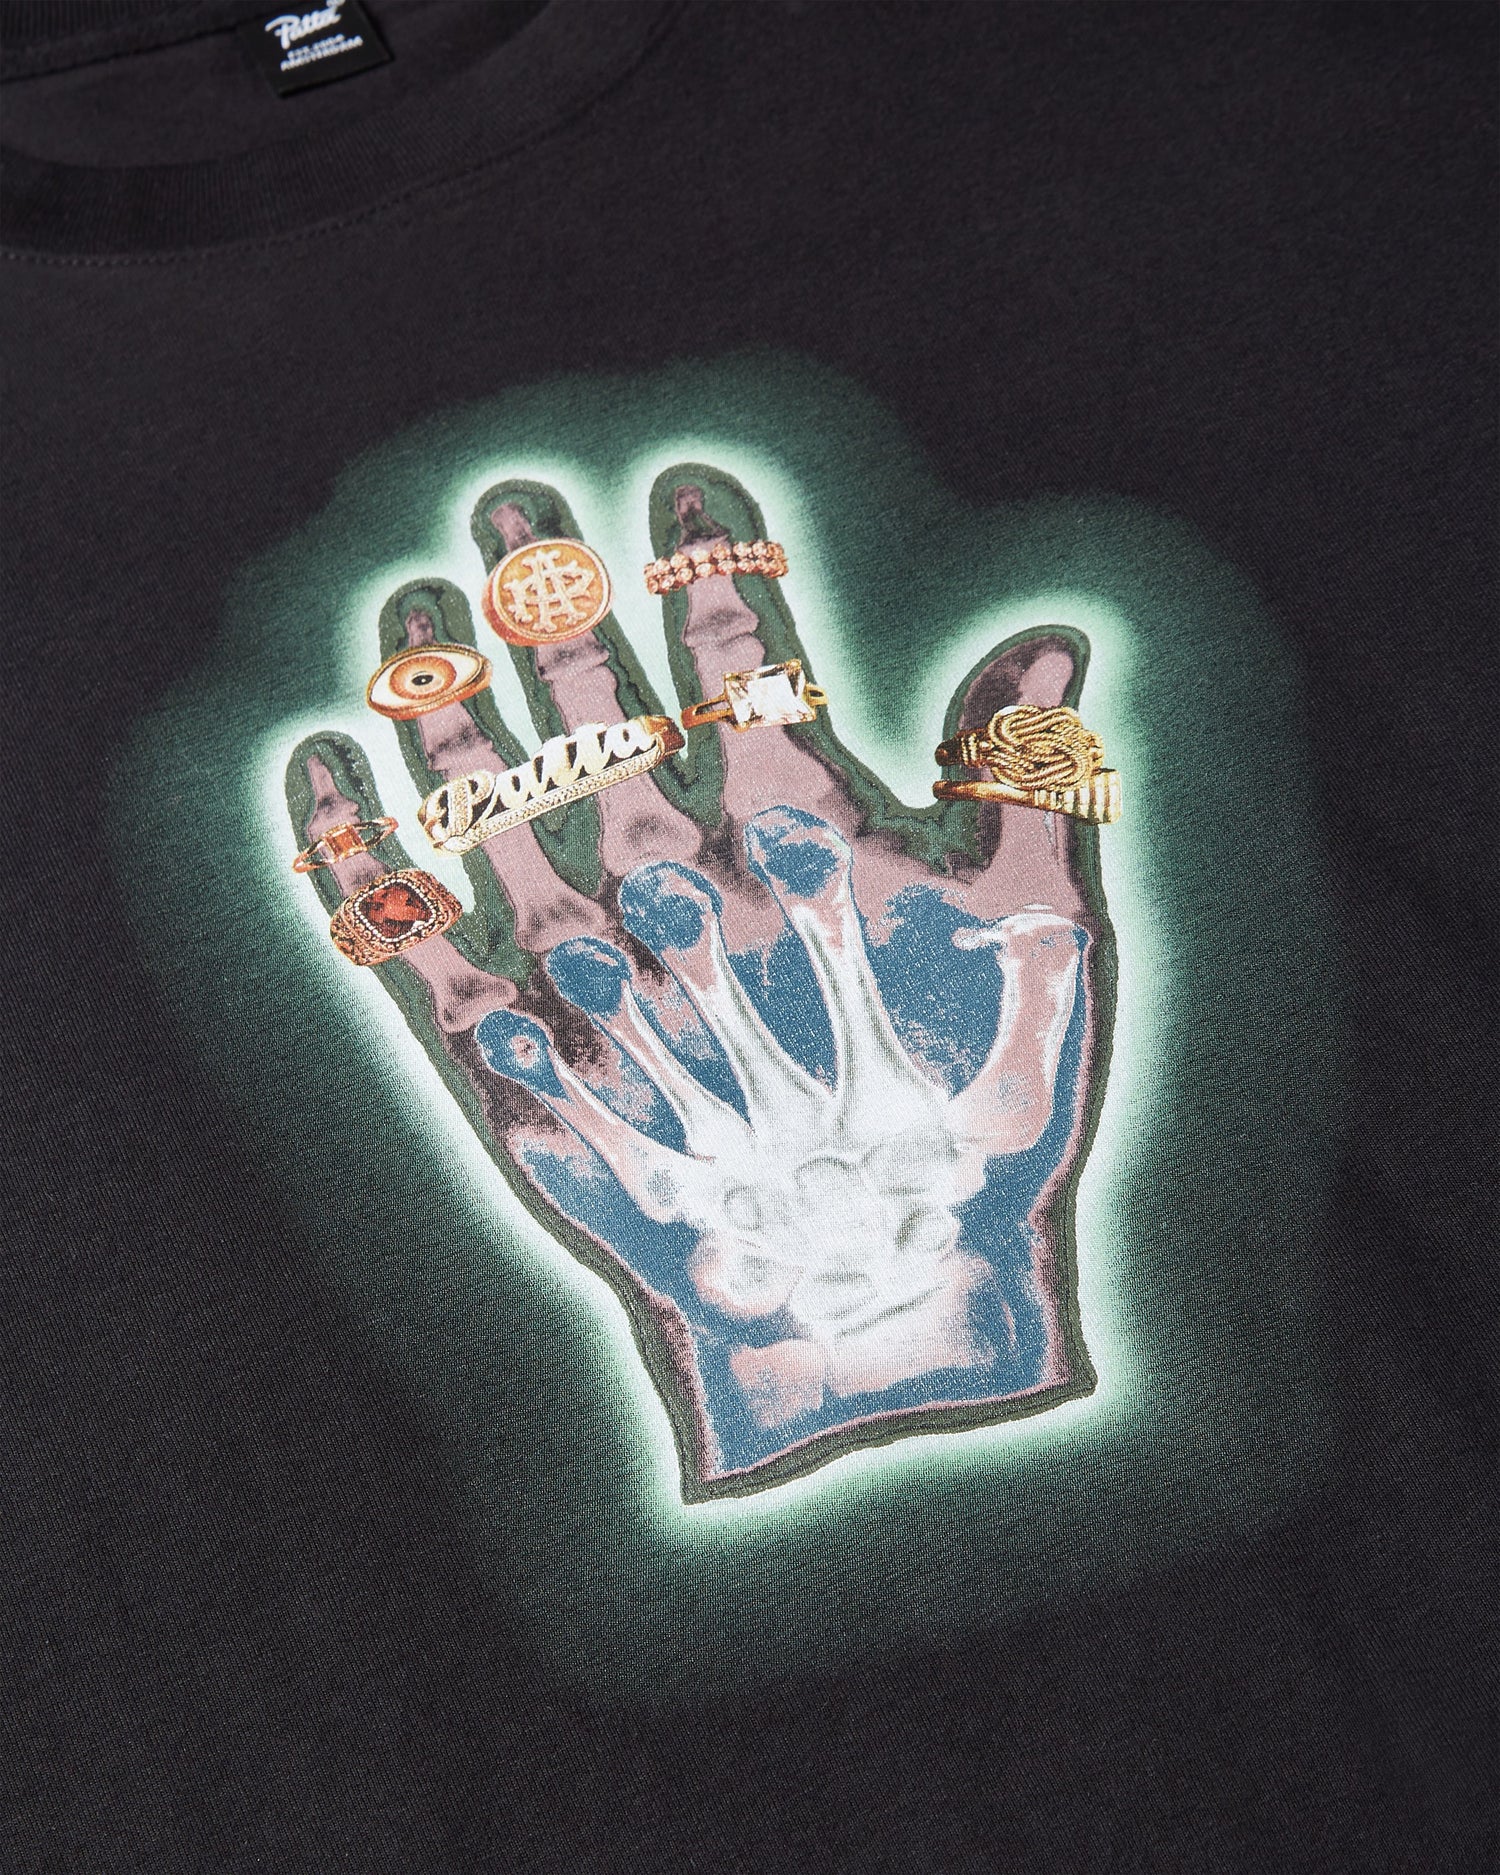 Patta Healing Hands T-Shirt (Black)